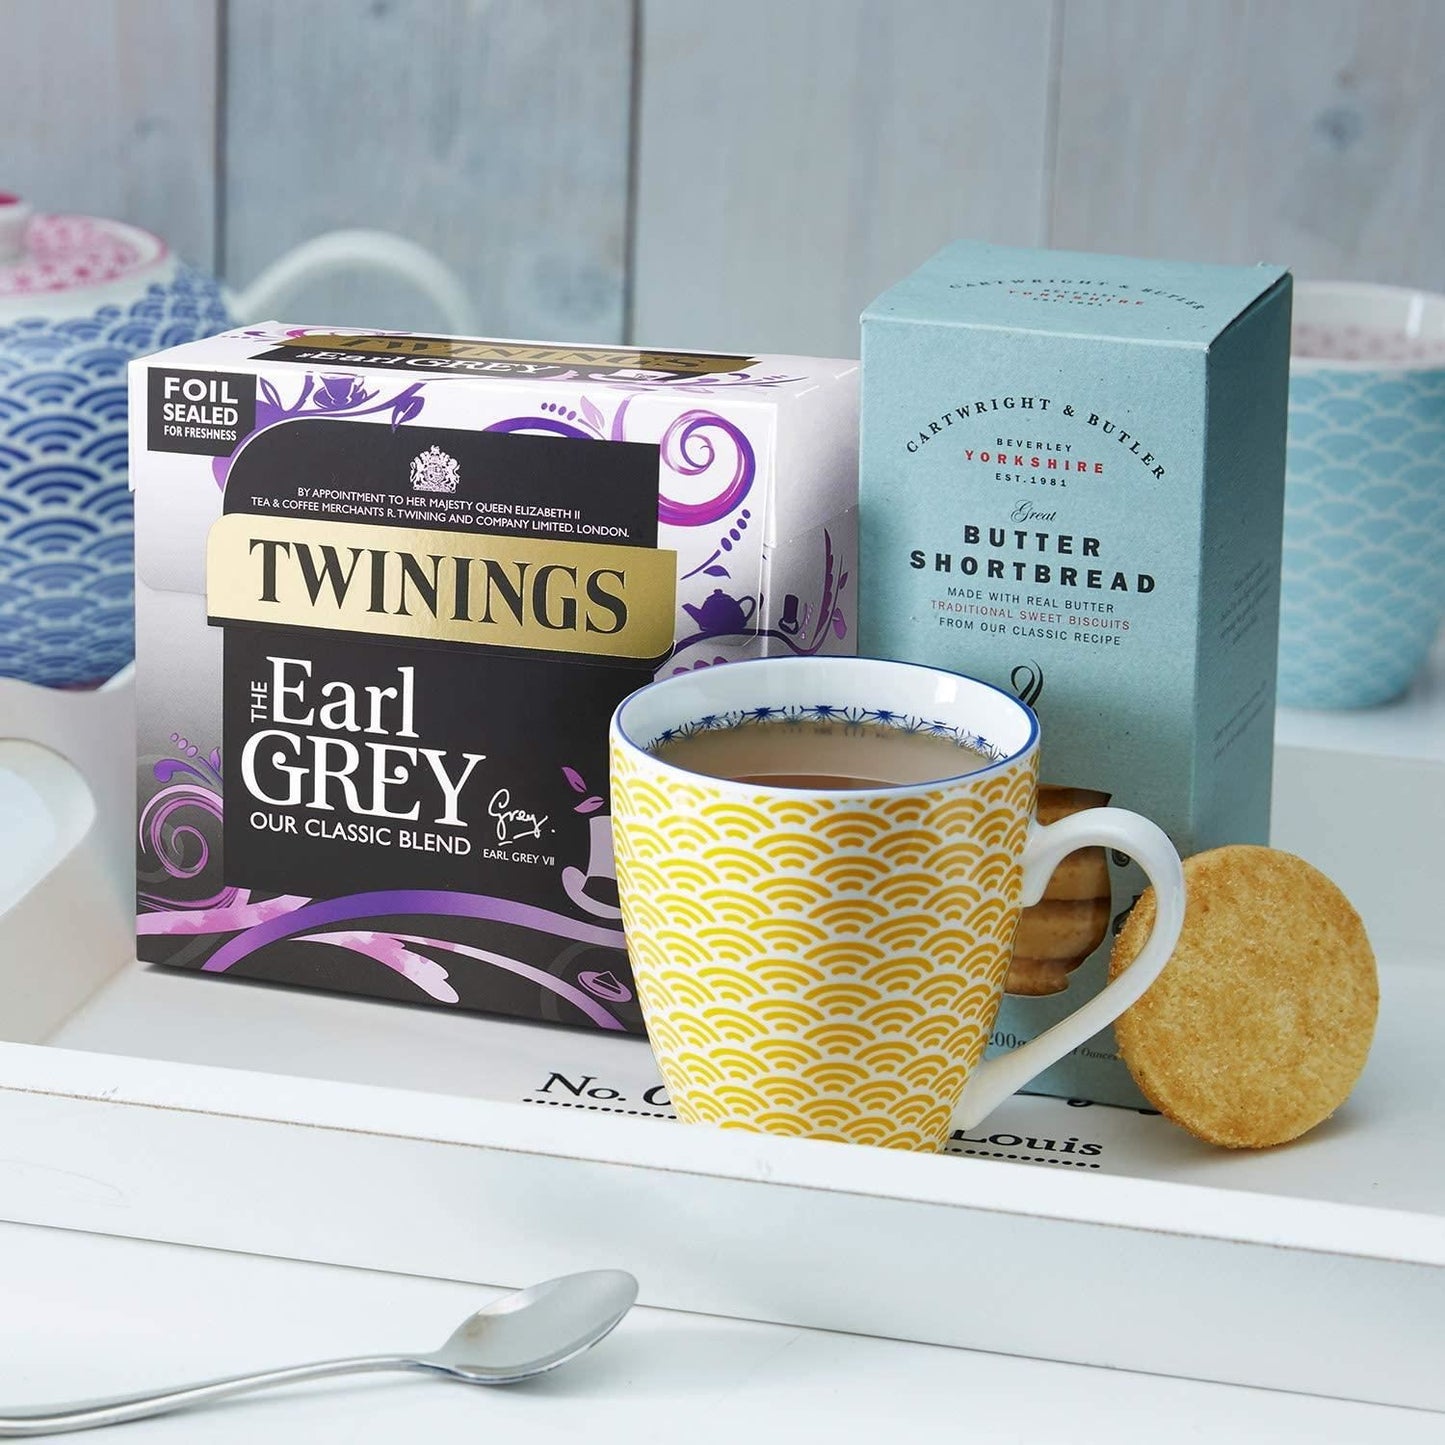 Twinings Earl Grey Tea Bags 100 Pack 250g